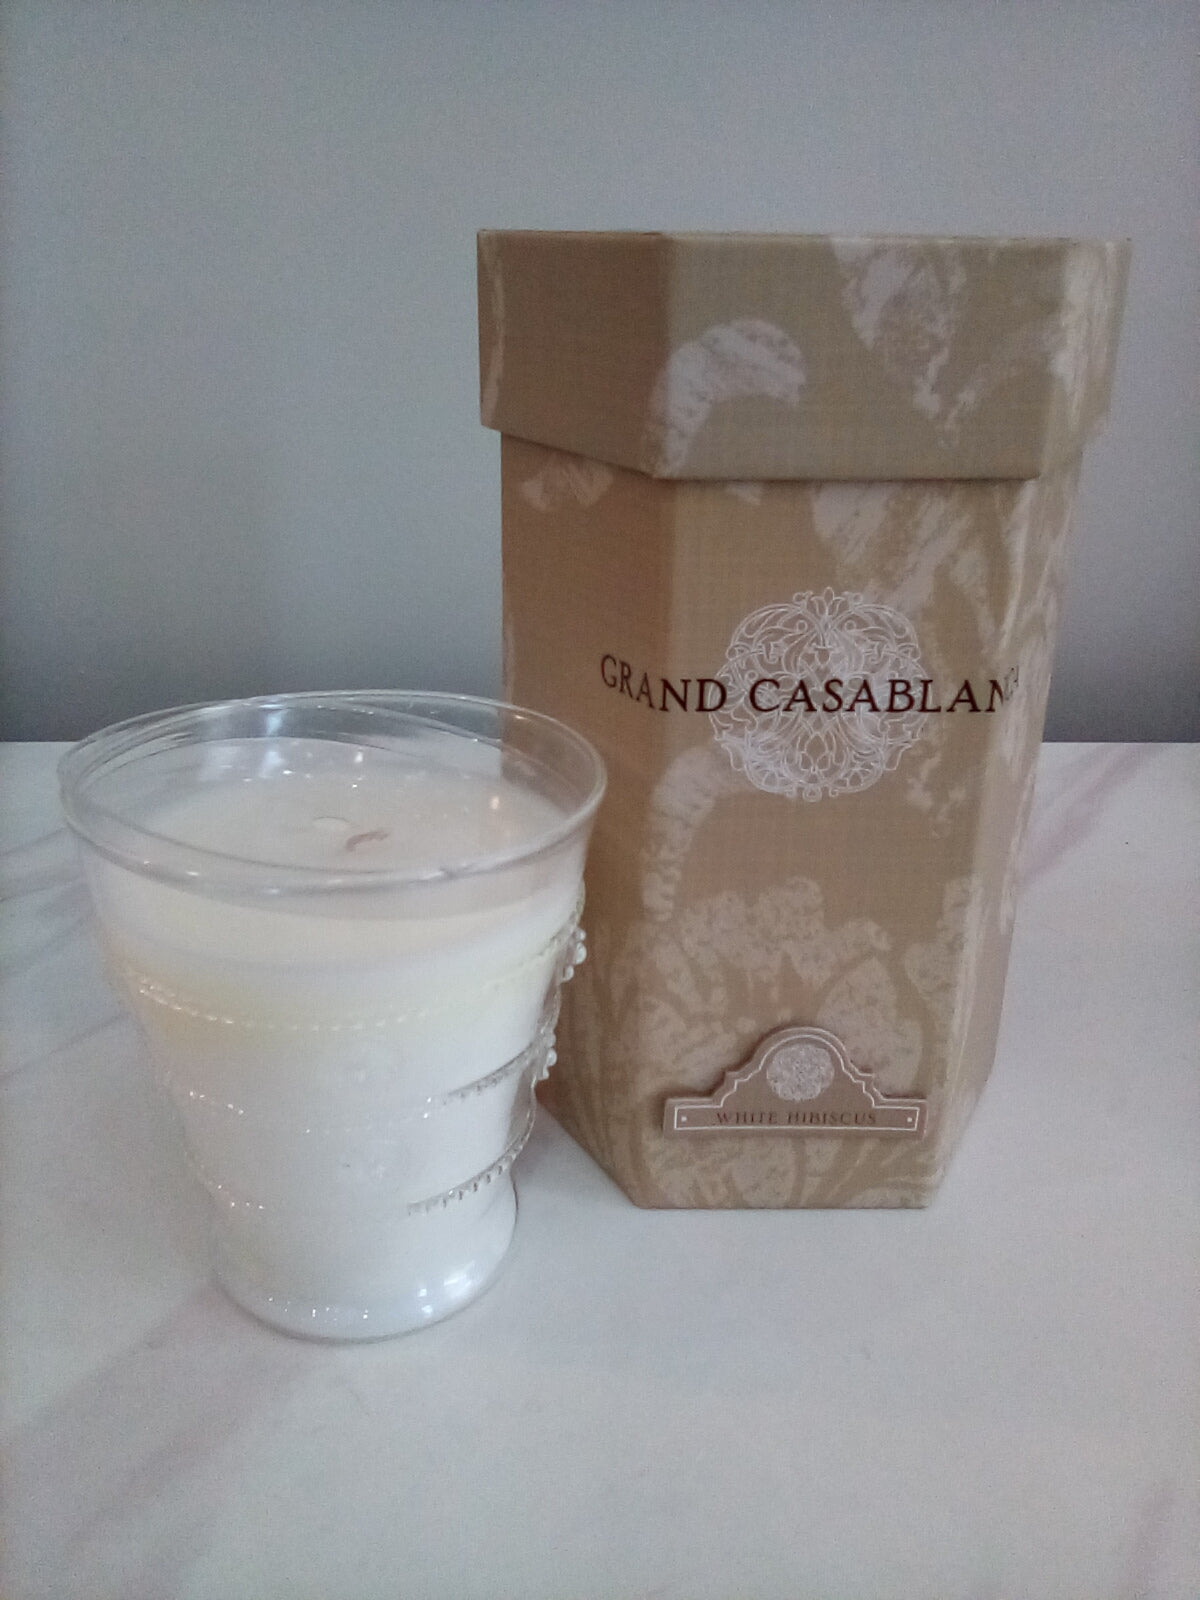 Grand Casablanca White Hibiscus candle